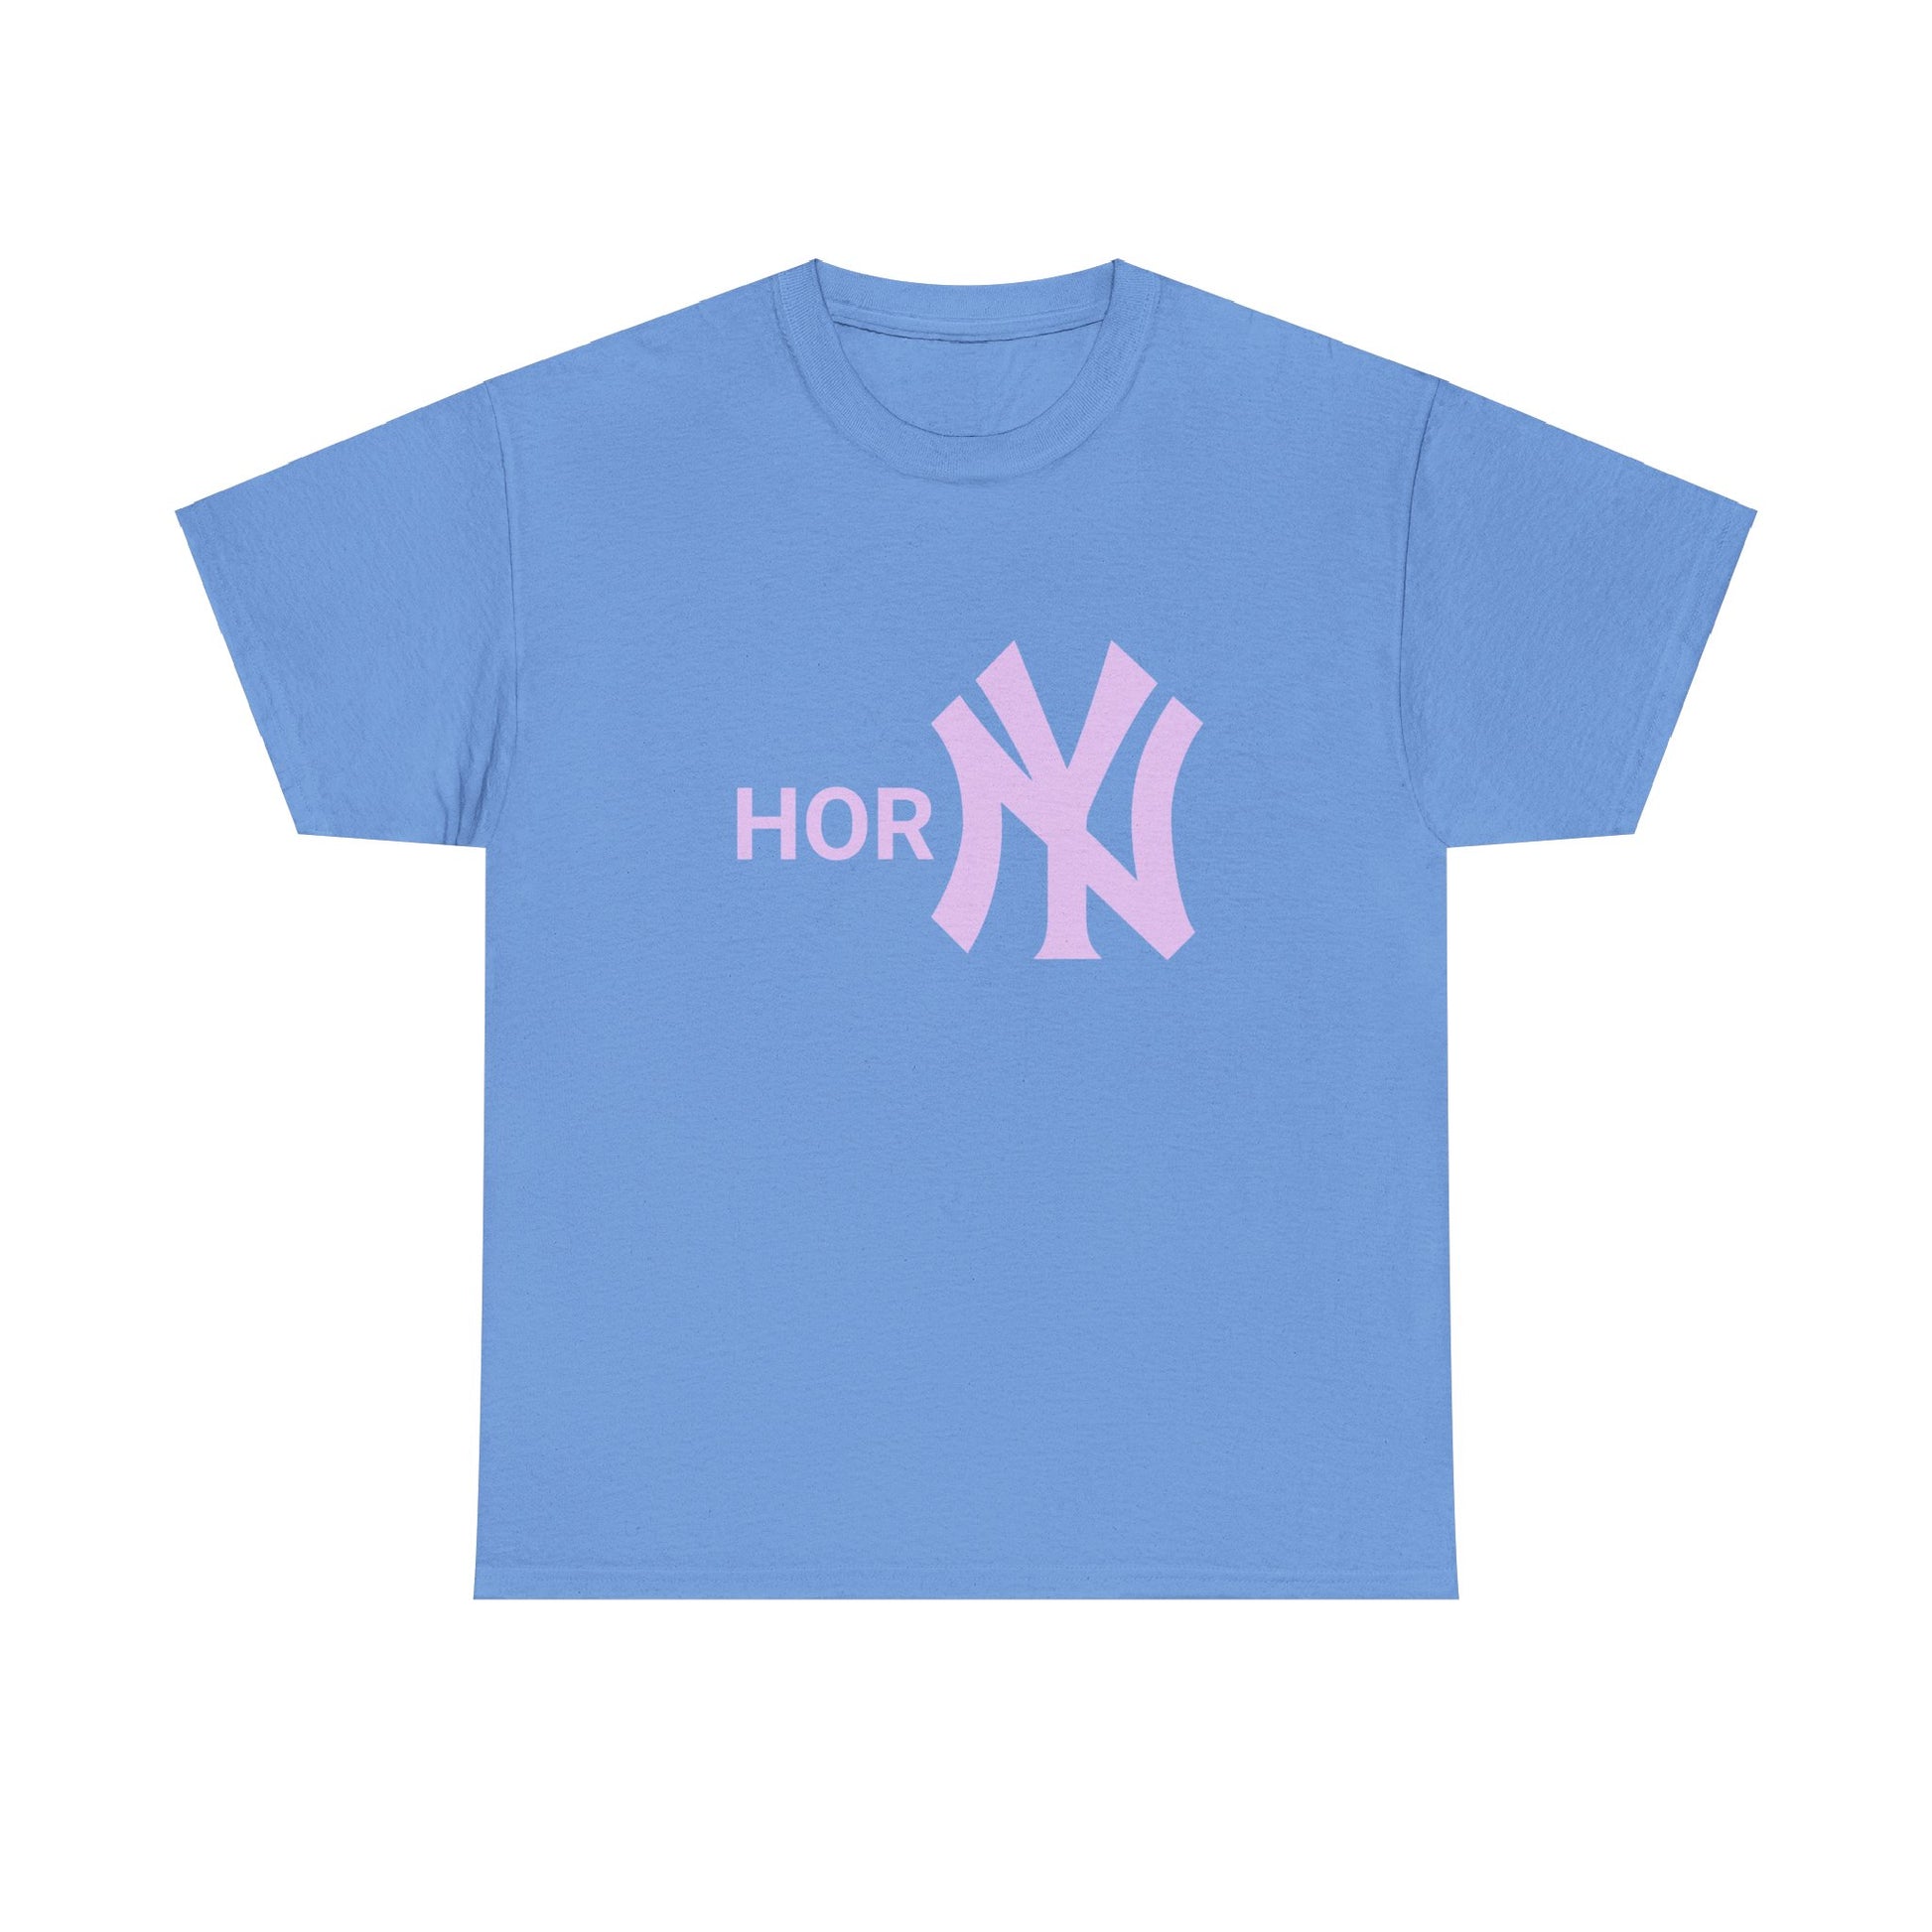 Entdecke unser provokatives T-Shirt mit dem Schriftzug "Horny" und dem ikonischen New York Yankees Logo. Ein Statement für selbstbewusste Fashionistas. Hochwertige Baumwolle für unschlagbaren Komfort. Hol dir jetzt dieses gewagte Statement-Piece! Horny Shirt to gift friends. Streetwear NY Style T-Shirt